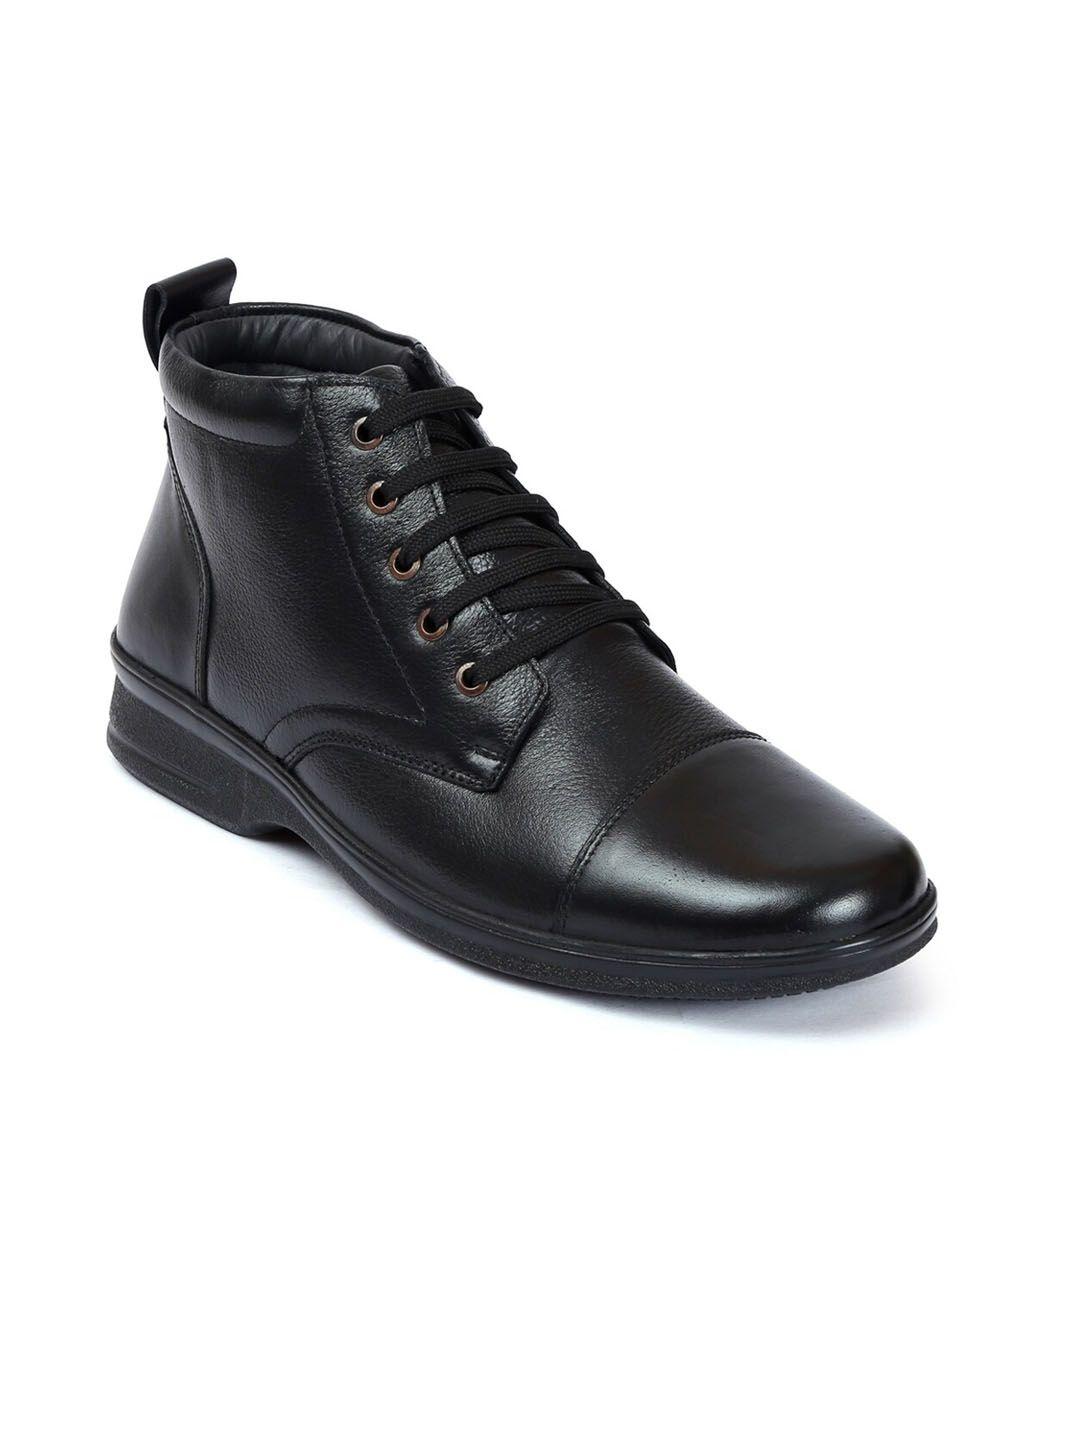 zoom shoes men leather derbys boots